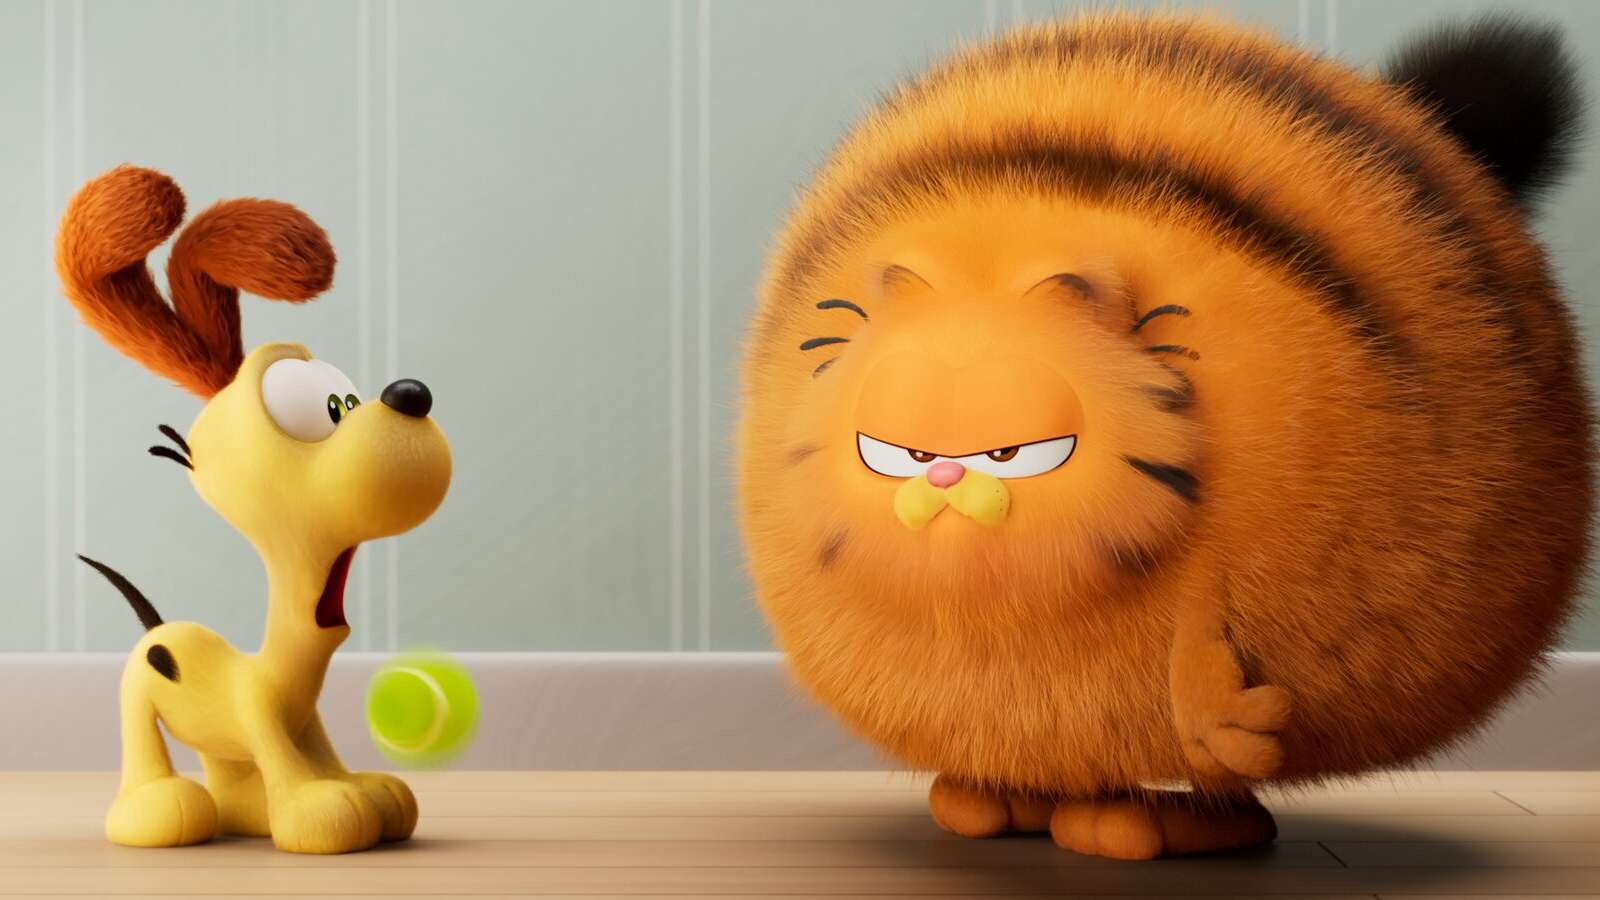 Garfield and Otis in new Garfield movie